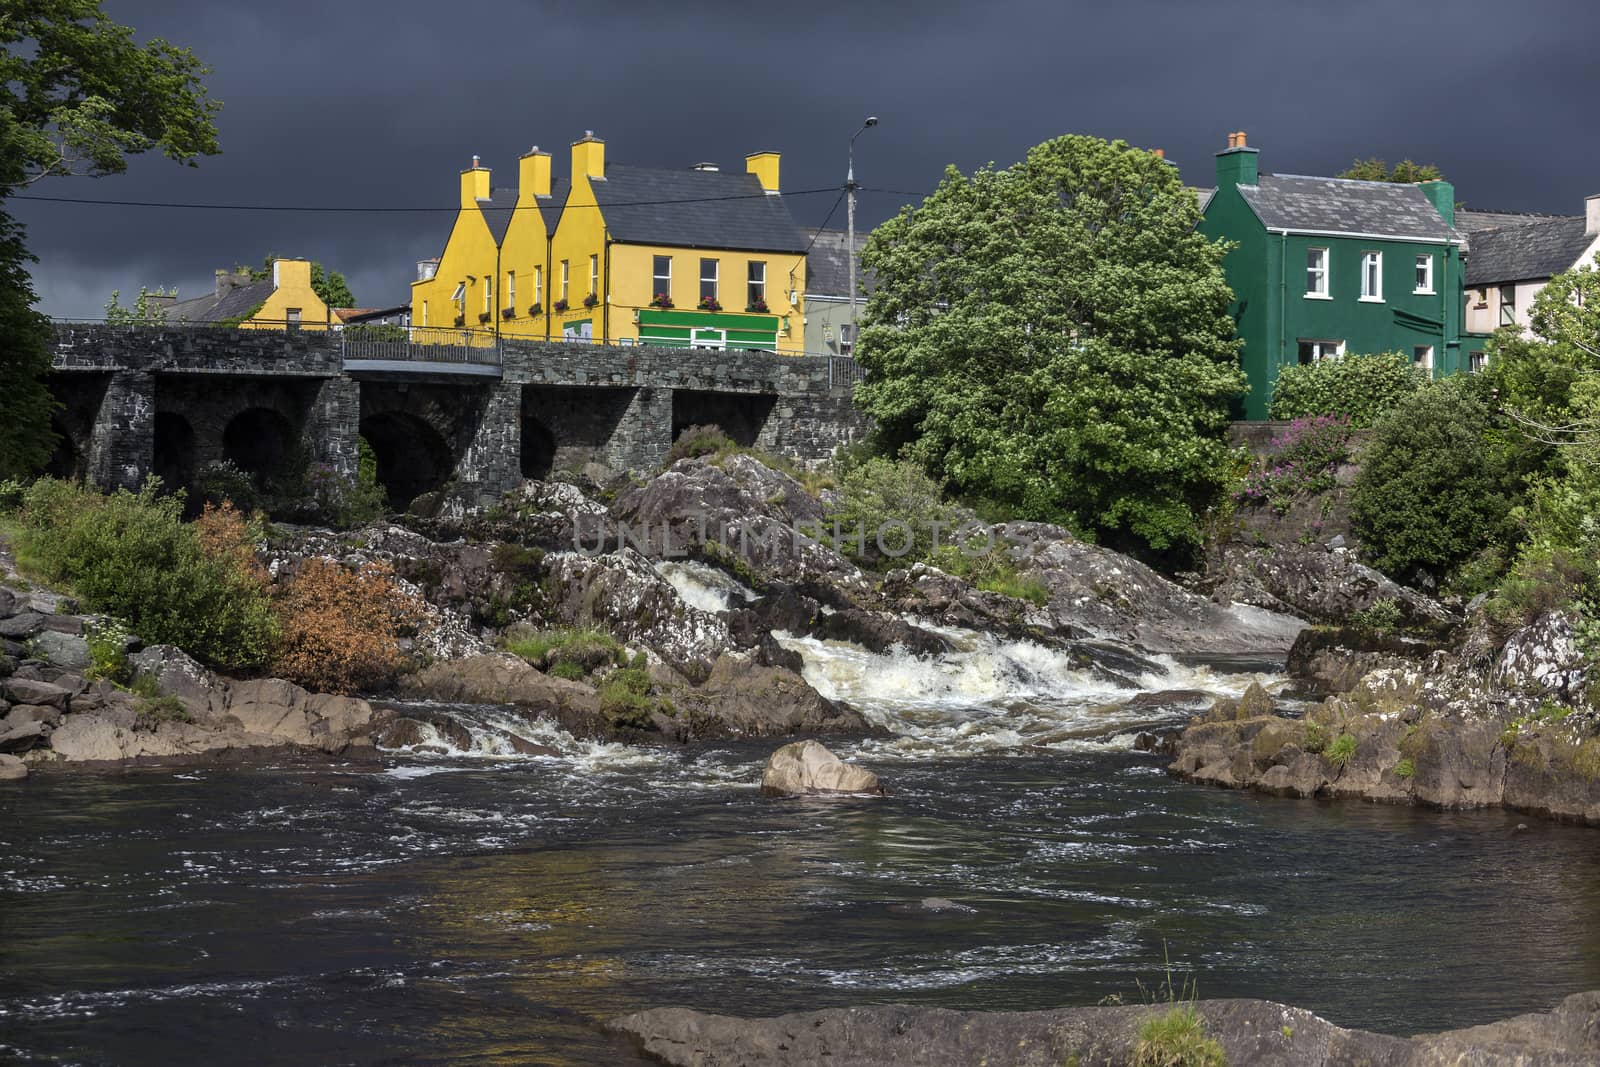 The village of Sneem - County Kerry - Ireland by SteveAllenPhoto